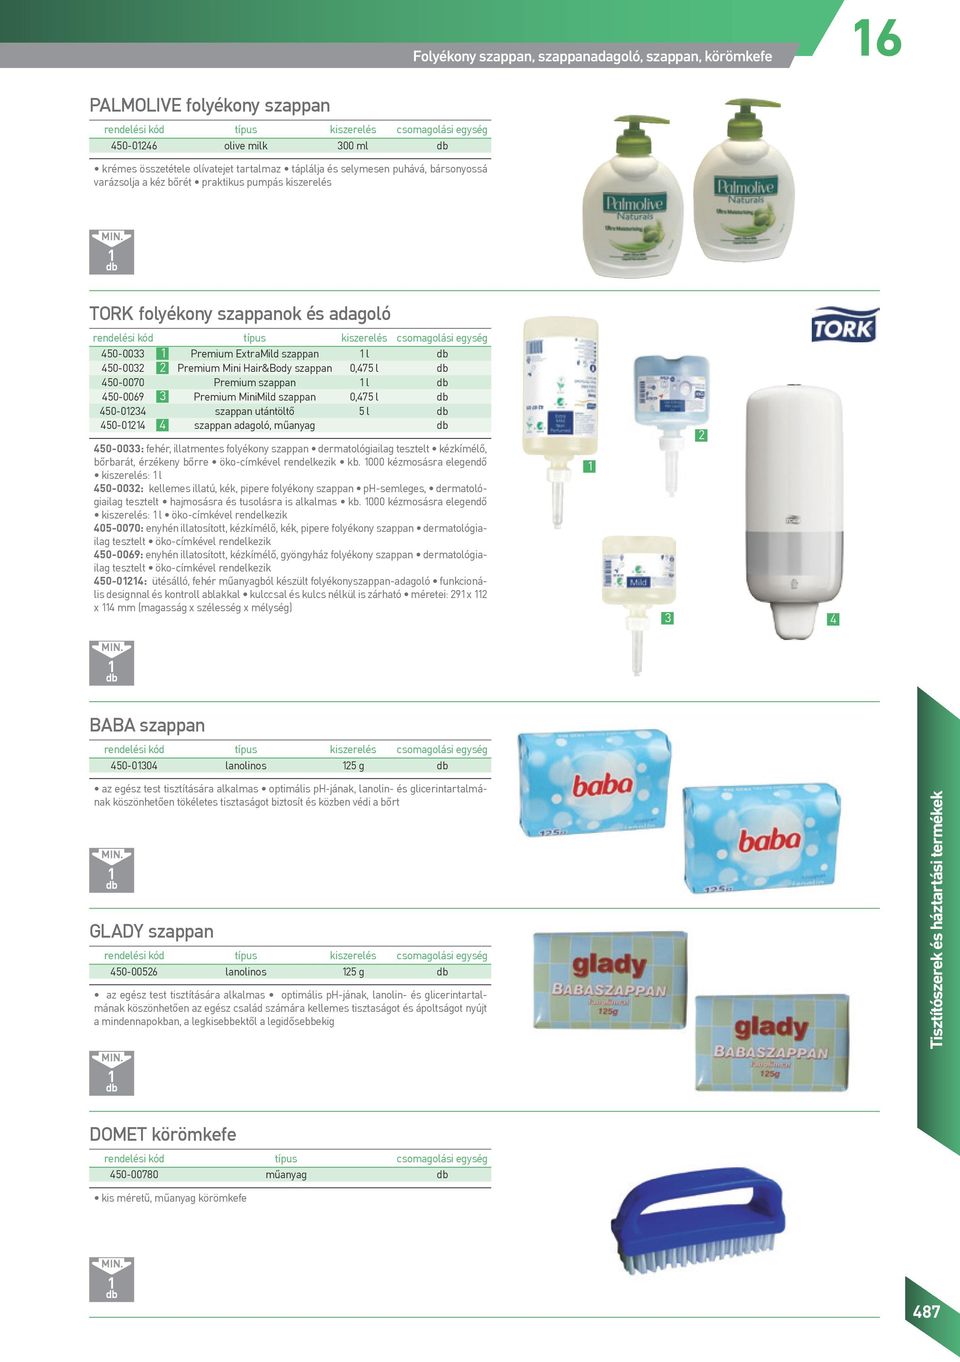 l 450-0069 3 Premium MiniMild szappan 0,475 l 450-0234 szappan utántöltő 5 l 450-024 4 szappan adagoló, műanyag 450-0033: fehér, illatmentes folyékony szappan dermatológiailag tesztelt kézkímélő,